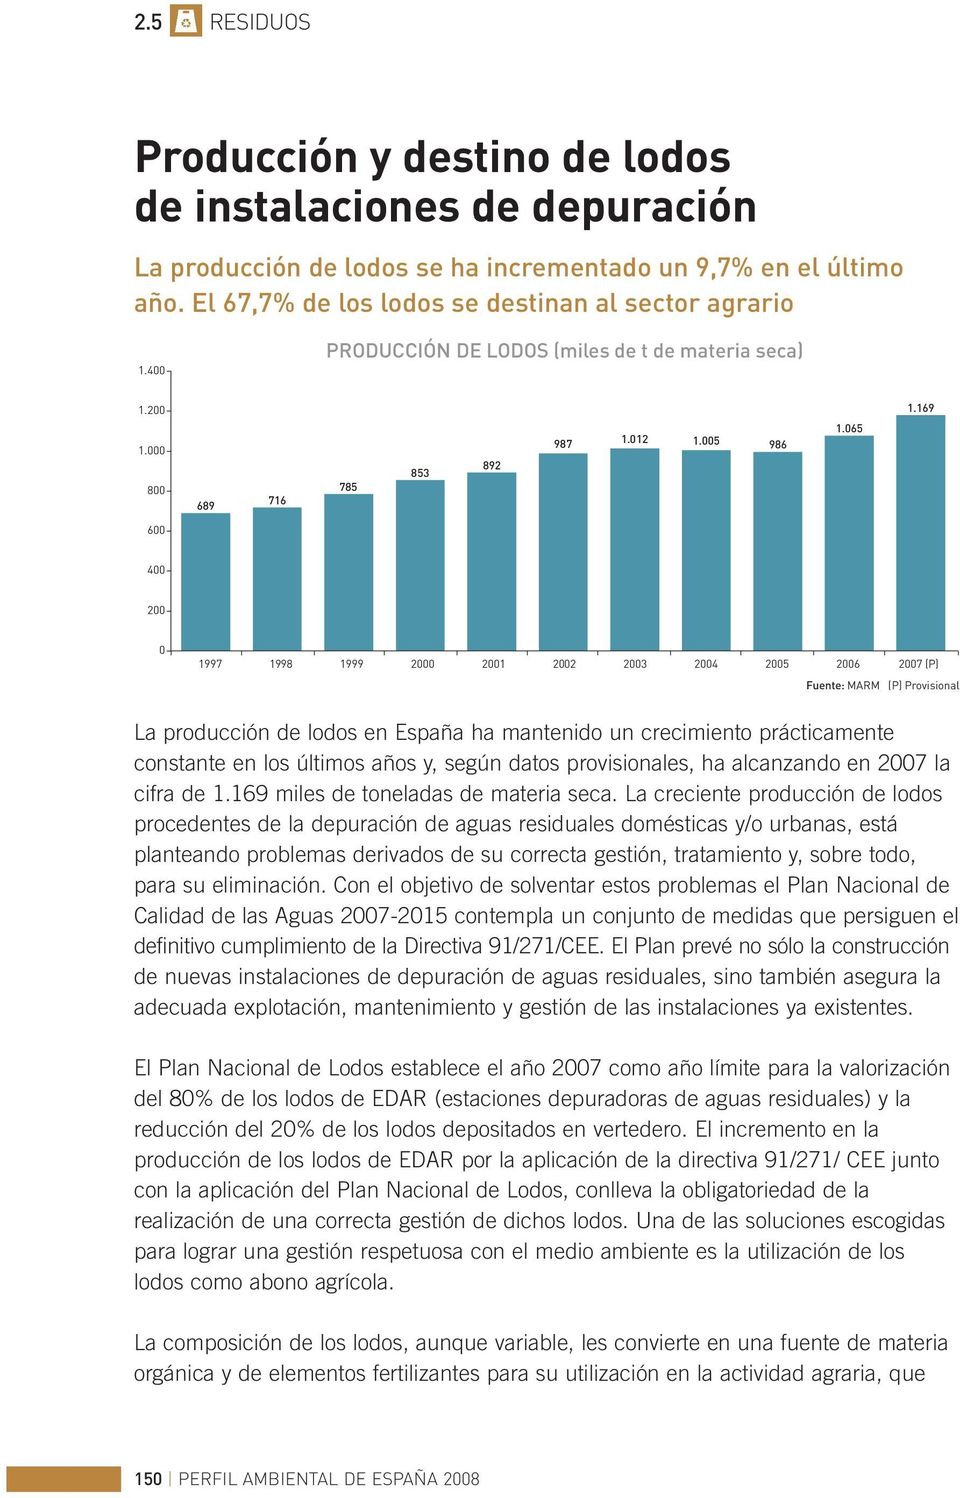 065 600 400 200 0 1997 1998 1999 2000 2001 2002 2003 2004 2005 2006 2007 (P) Fuente: MARM (P) Provisional La producción de lodos en España ha mantenido un crecimiento prácticamente constante en los